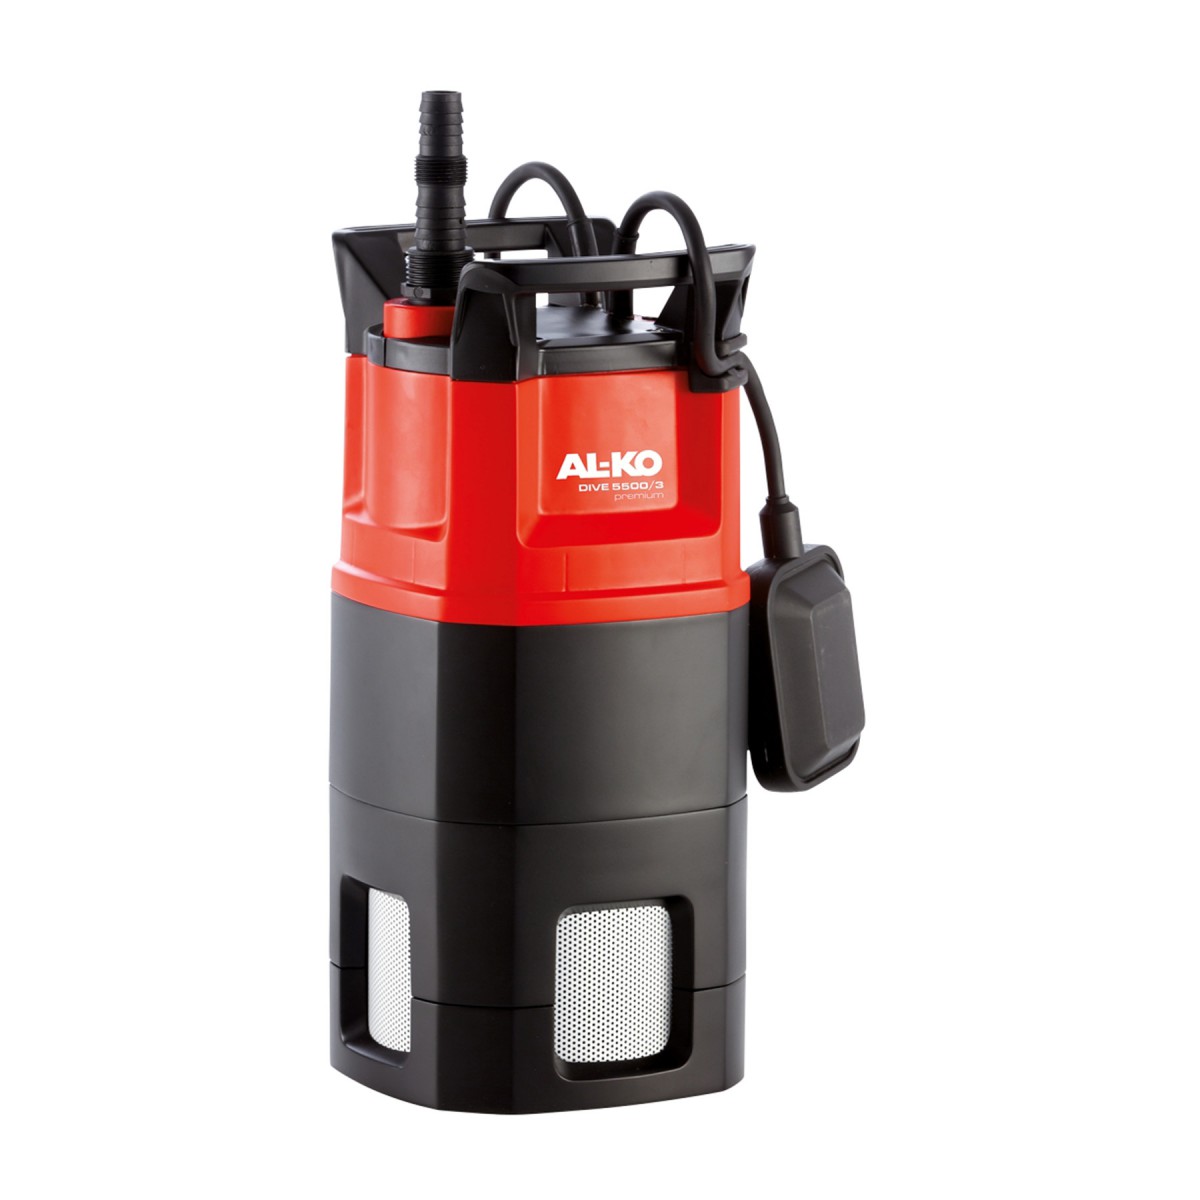 Pressure pump AL-KO Dive 5500/3